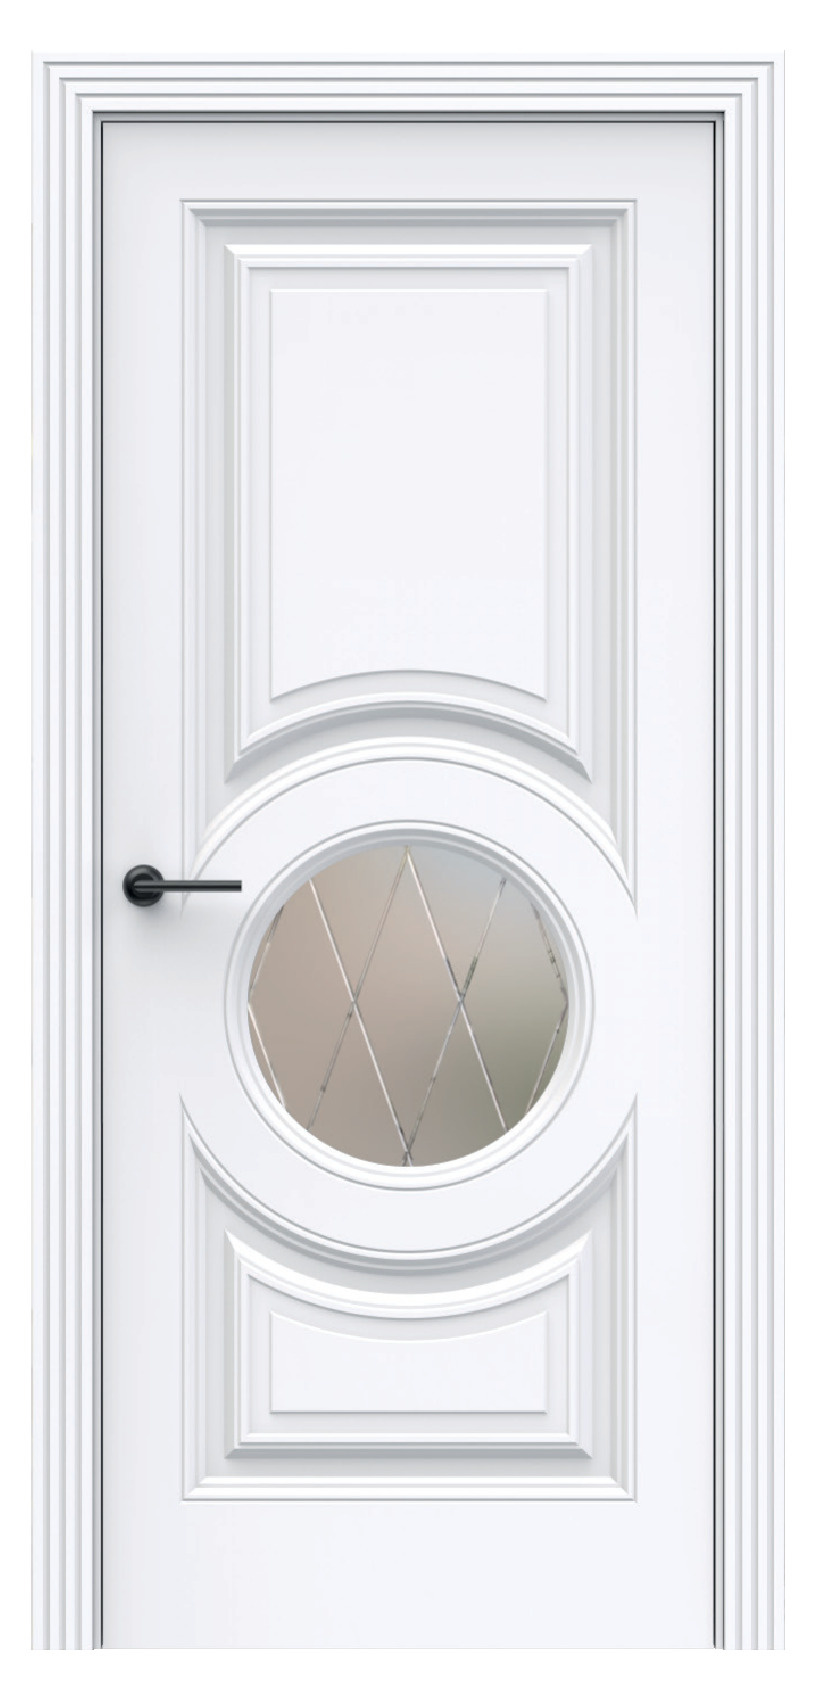 Questdoors Межкомнатная дверь QBR24, арт. 17937 - фото №1